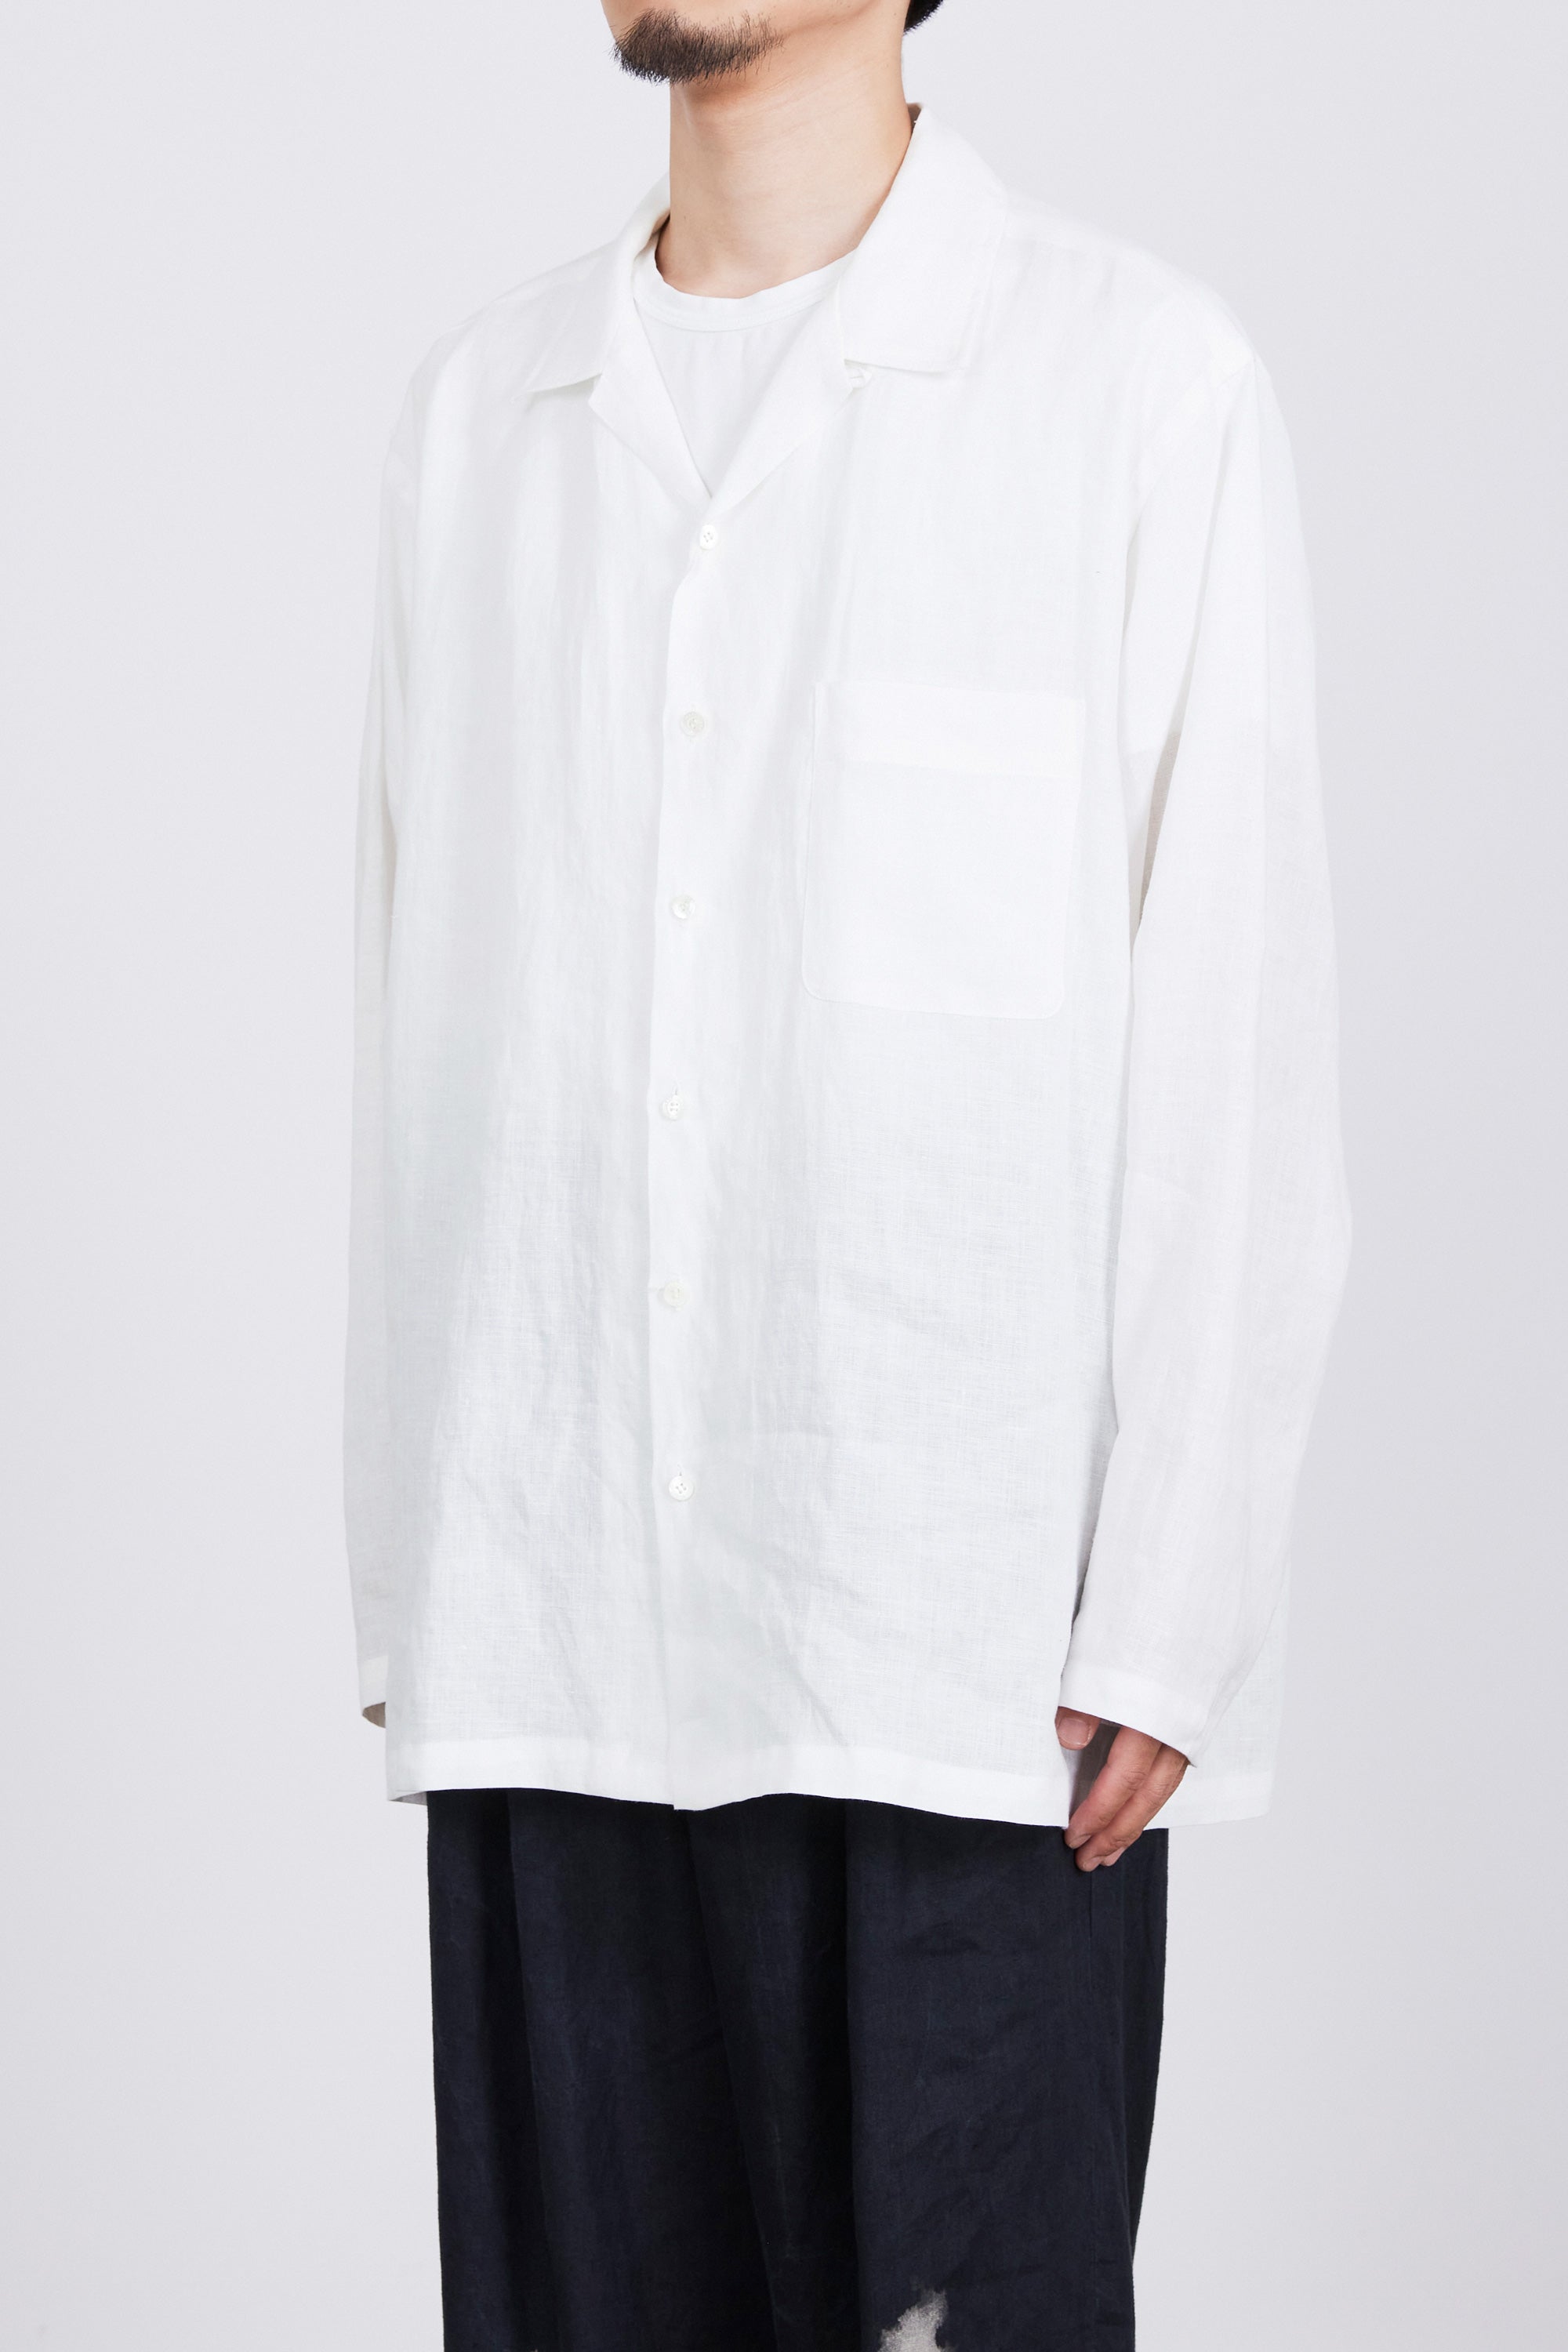 Markaware silk100% オープンカラーシャツサイズ1